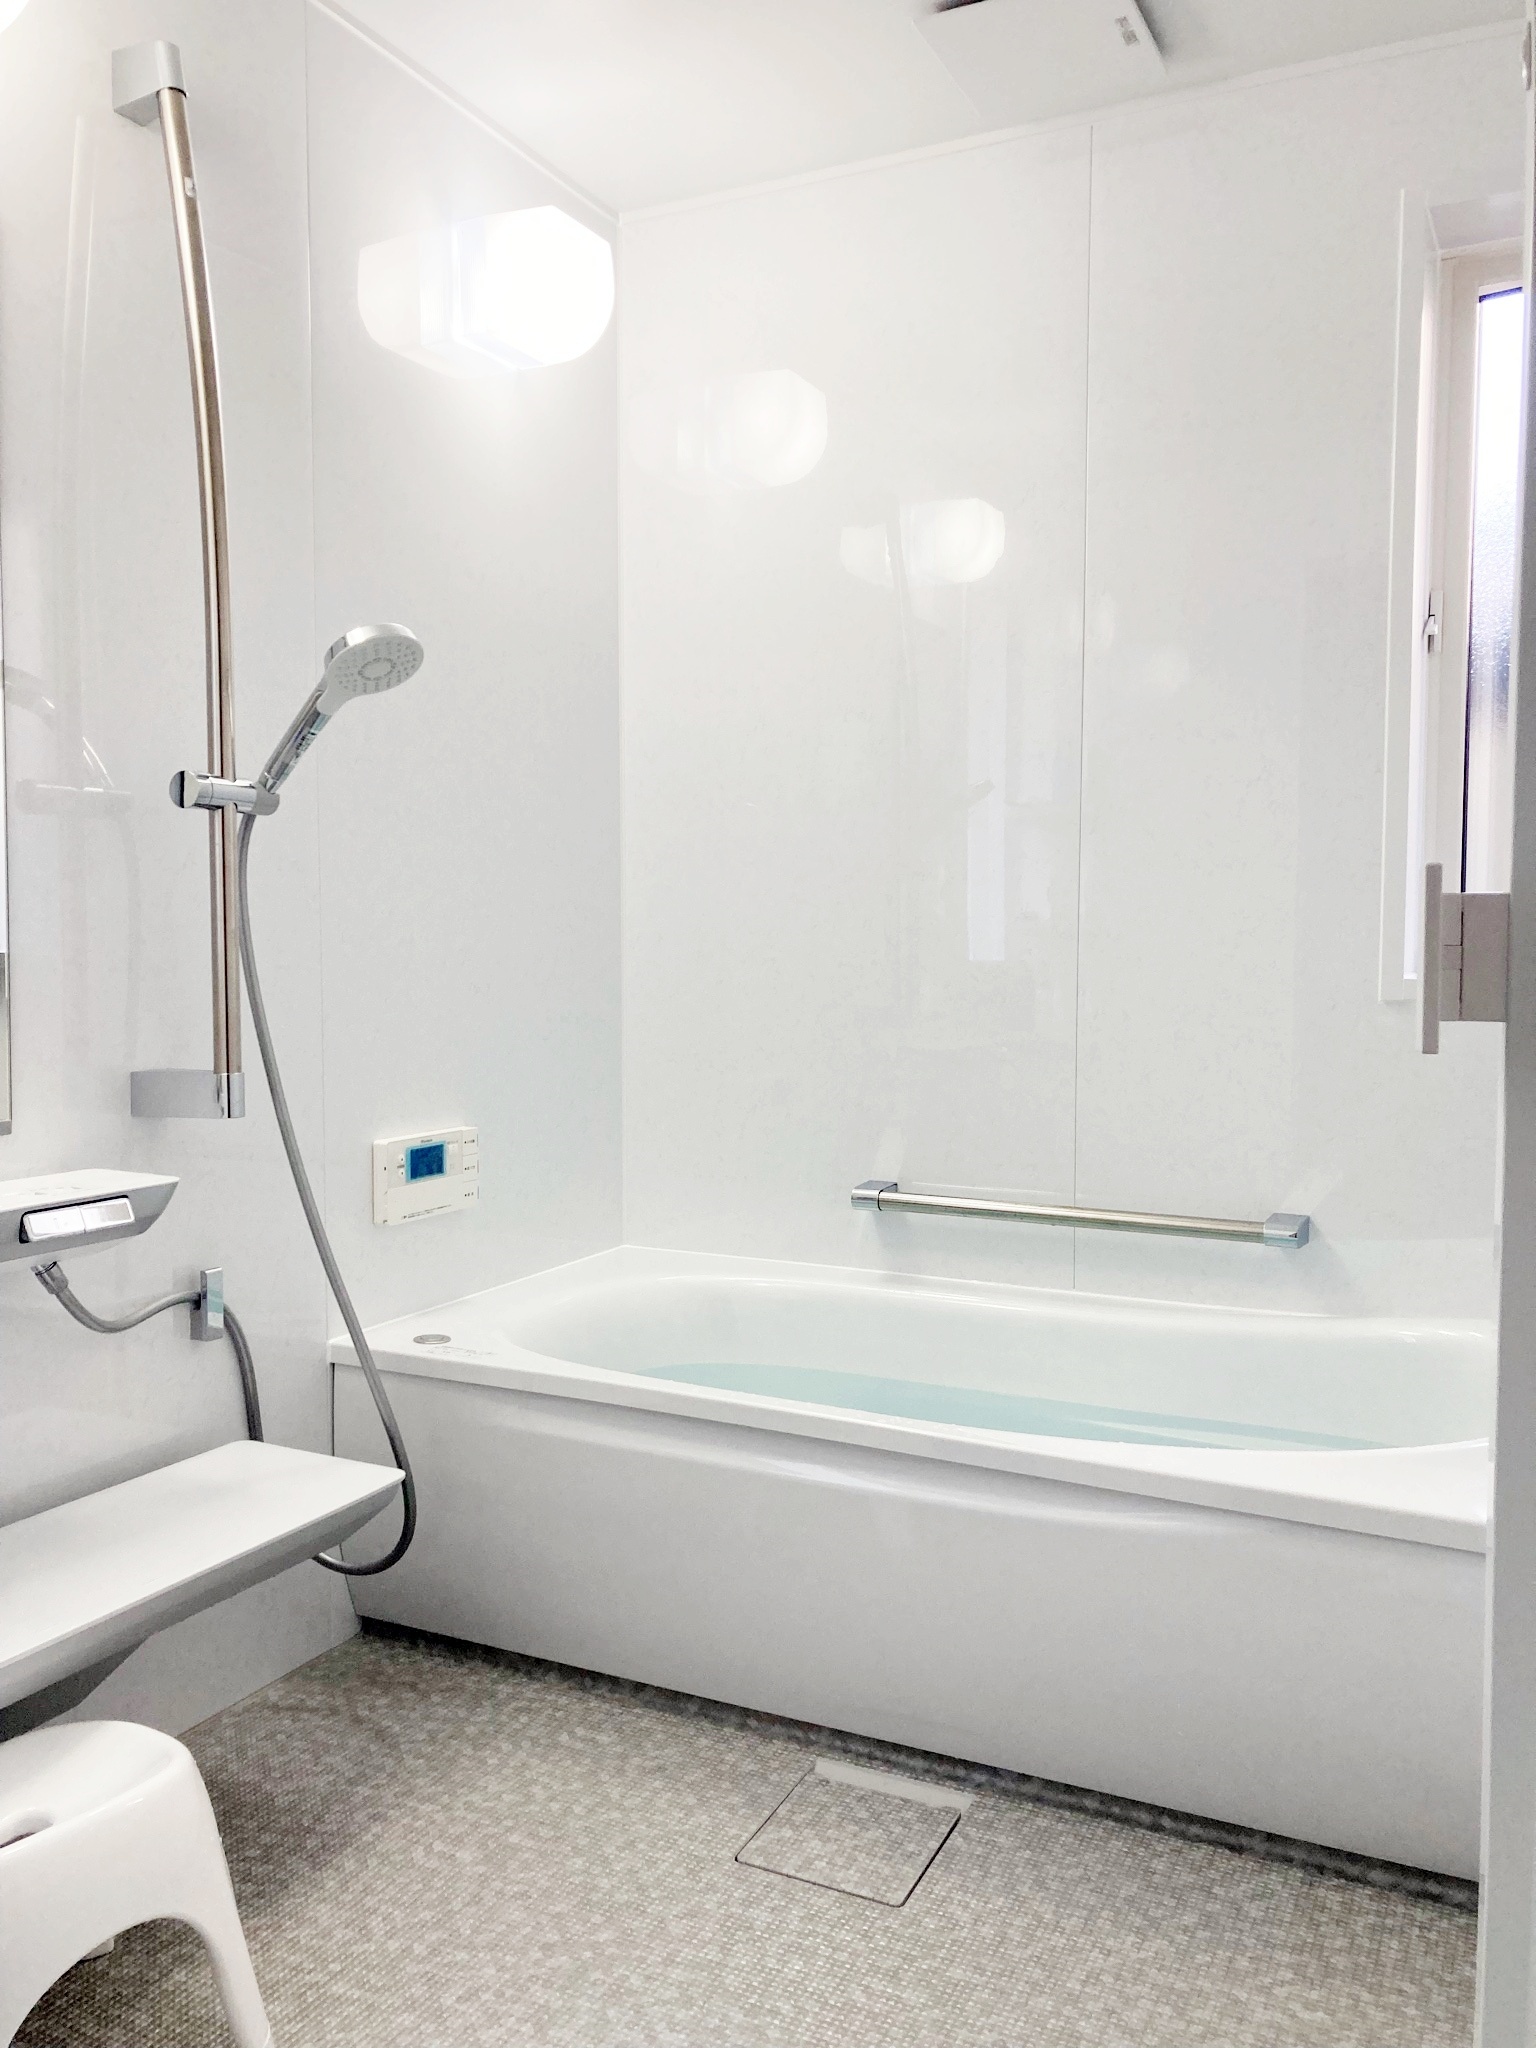 お風呂はＴＯＴＯサザナのＰタイプ、1620サイズと広い空間でゆったりご入浴頂けます。水栓がボタン式で使い易くなっています。オプションで断熱パックを入れることで、壁と天井をすっぽり丸ごと保温ができます。